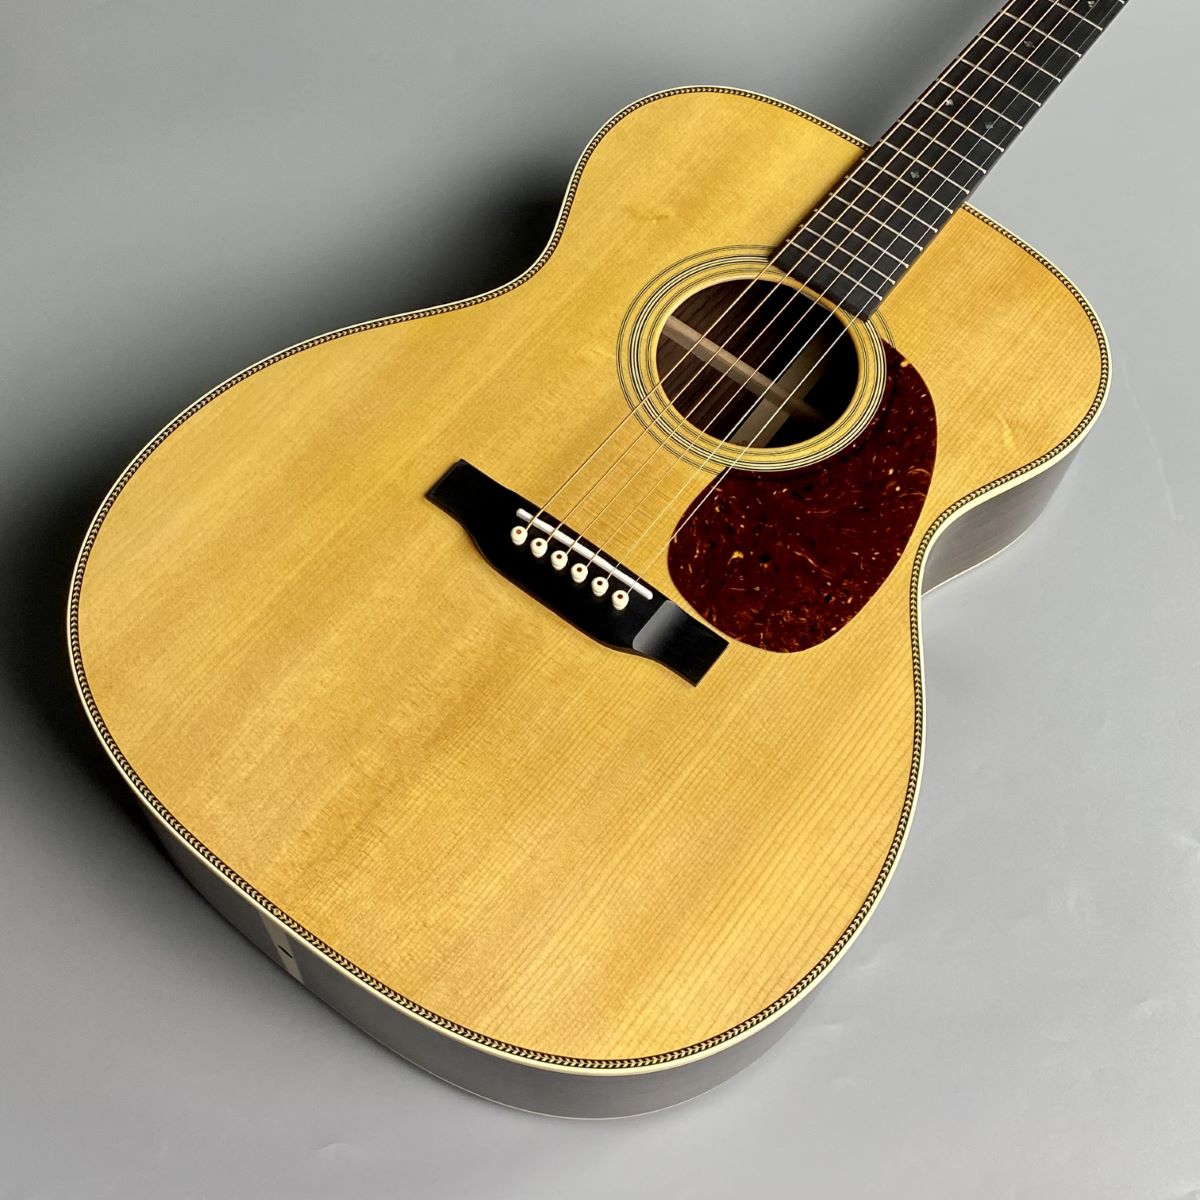 Martin 000-28 Standard アコースティックギター【マーチン】 マーチン